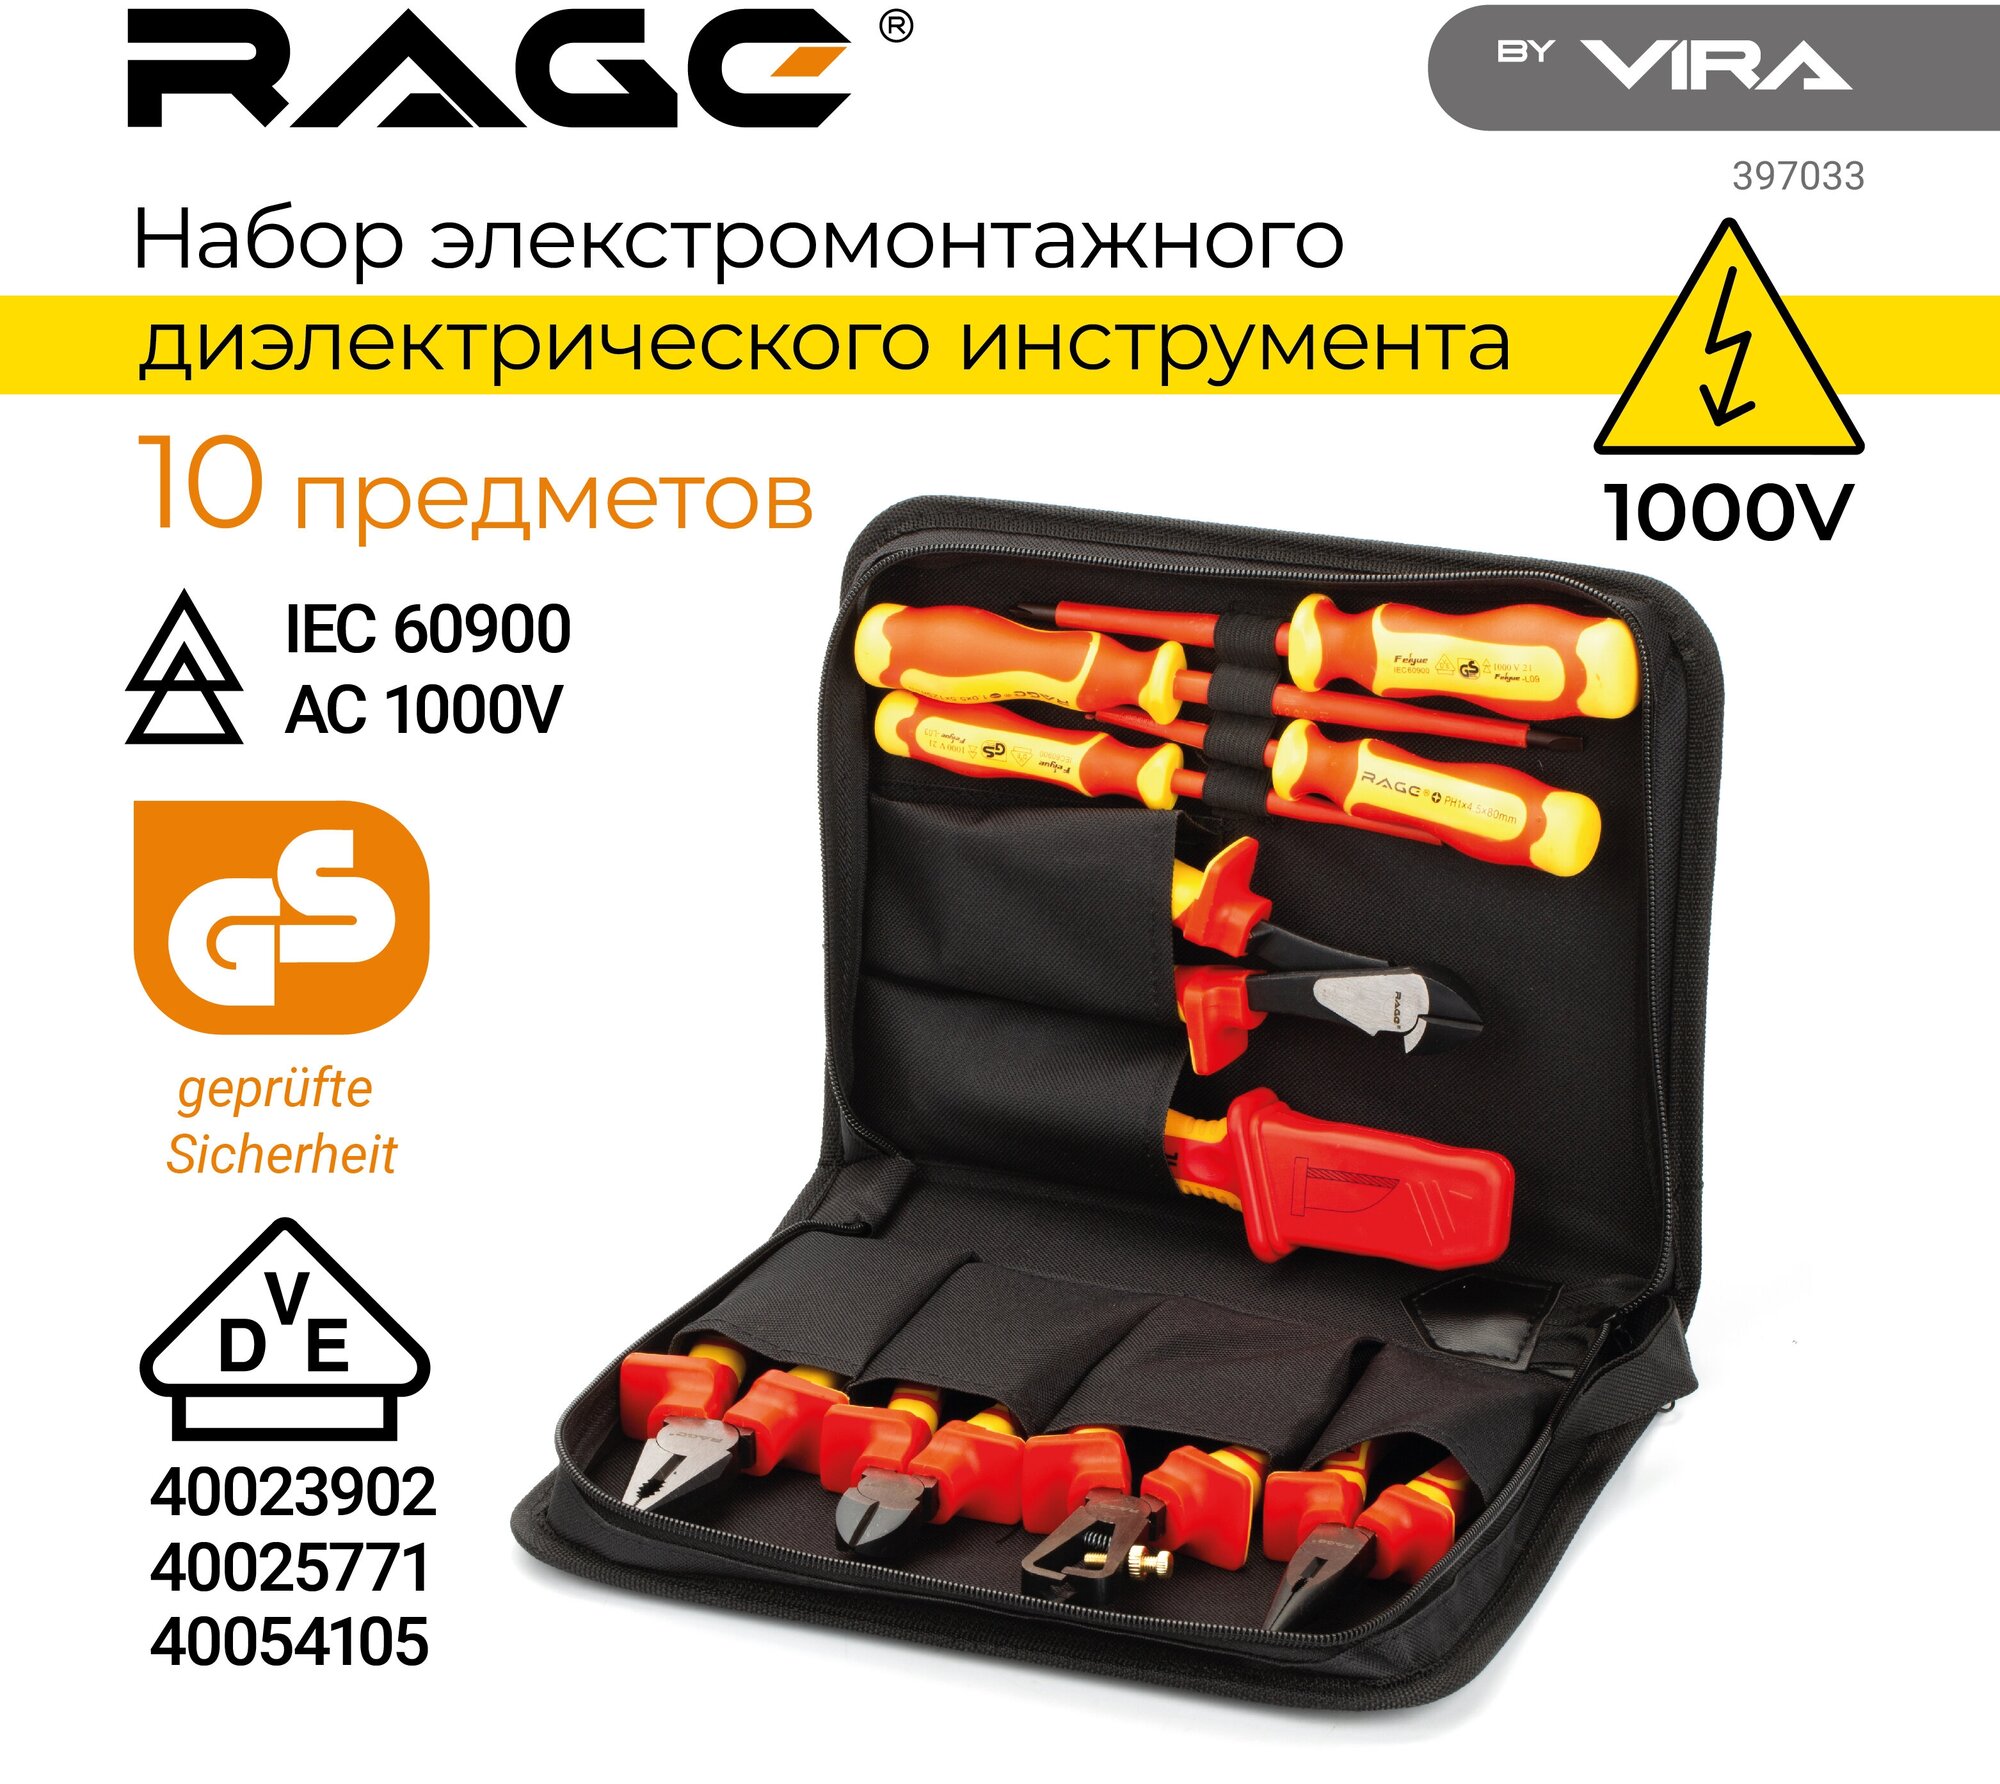 Набор электромонтажного инструмента VIRA RAGE VDE 397033